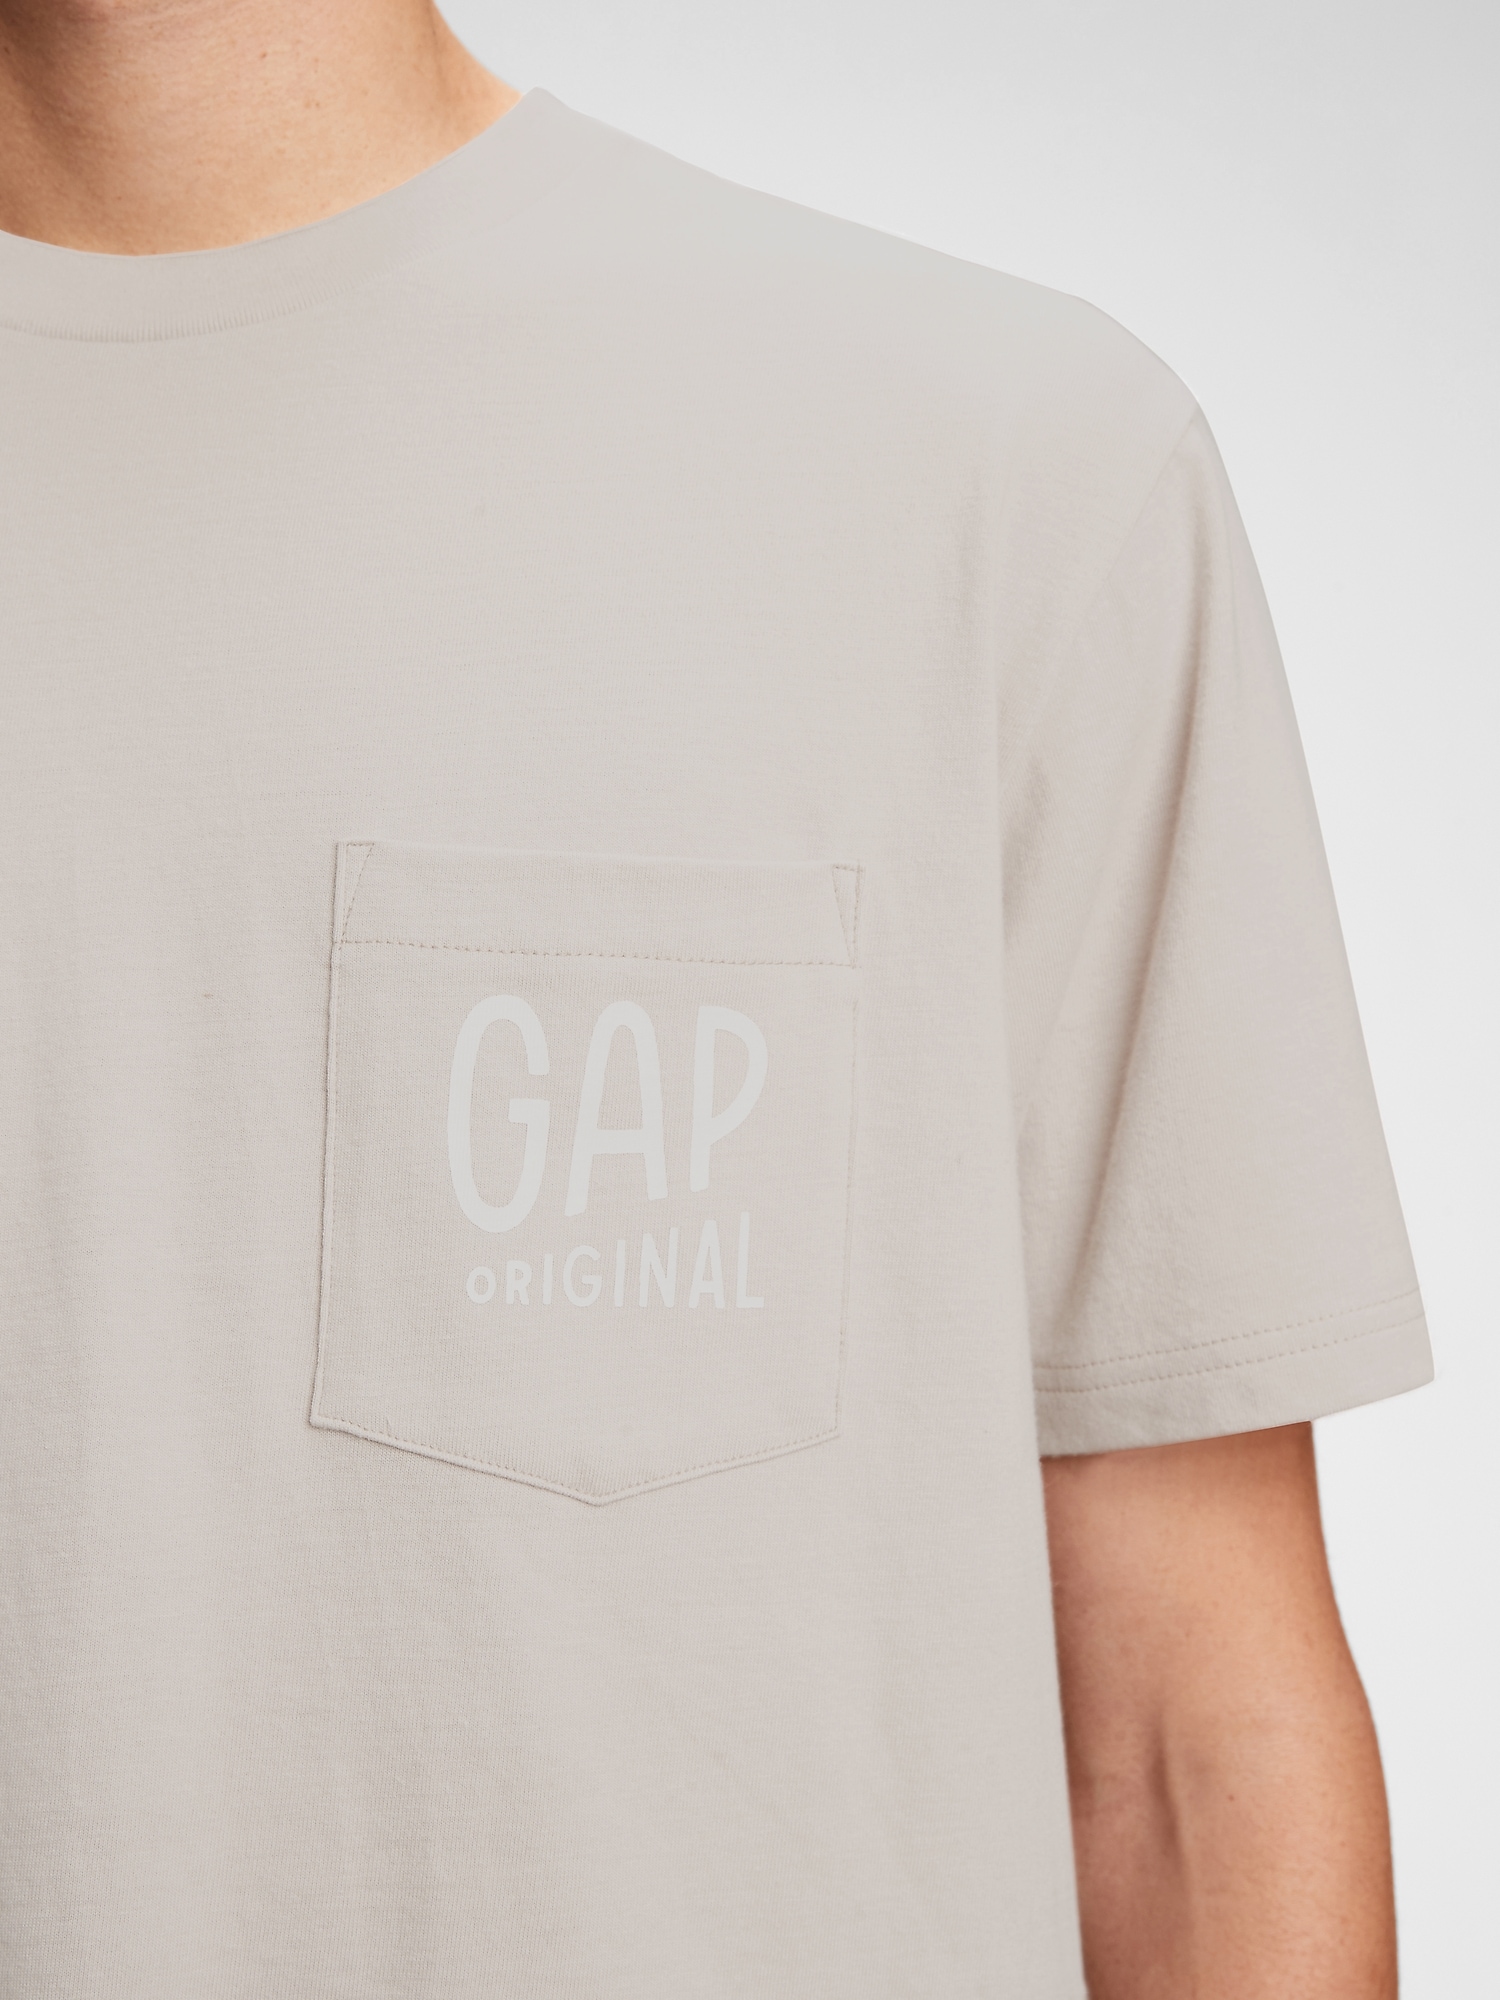 Gap Logo T-Shirt. 9